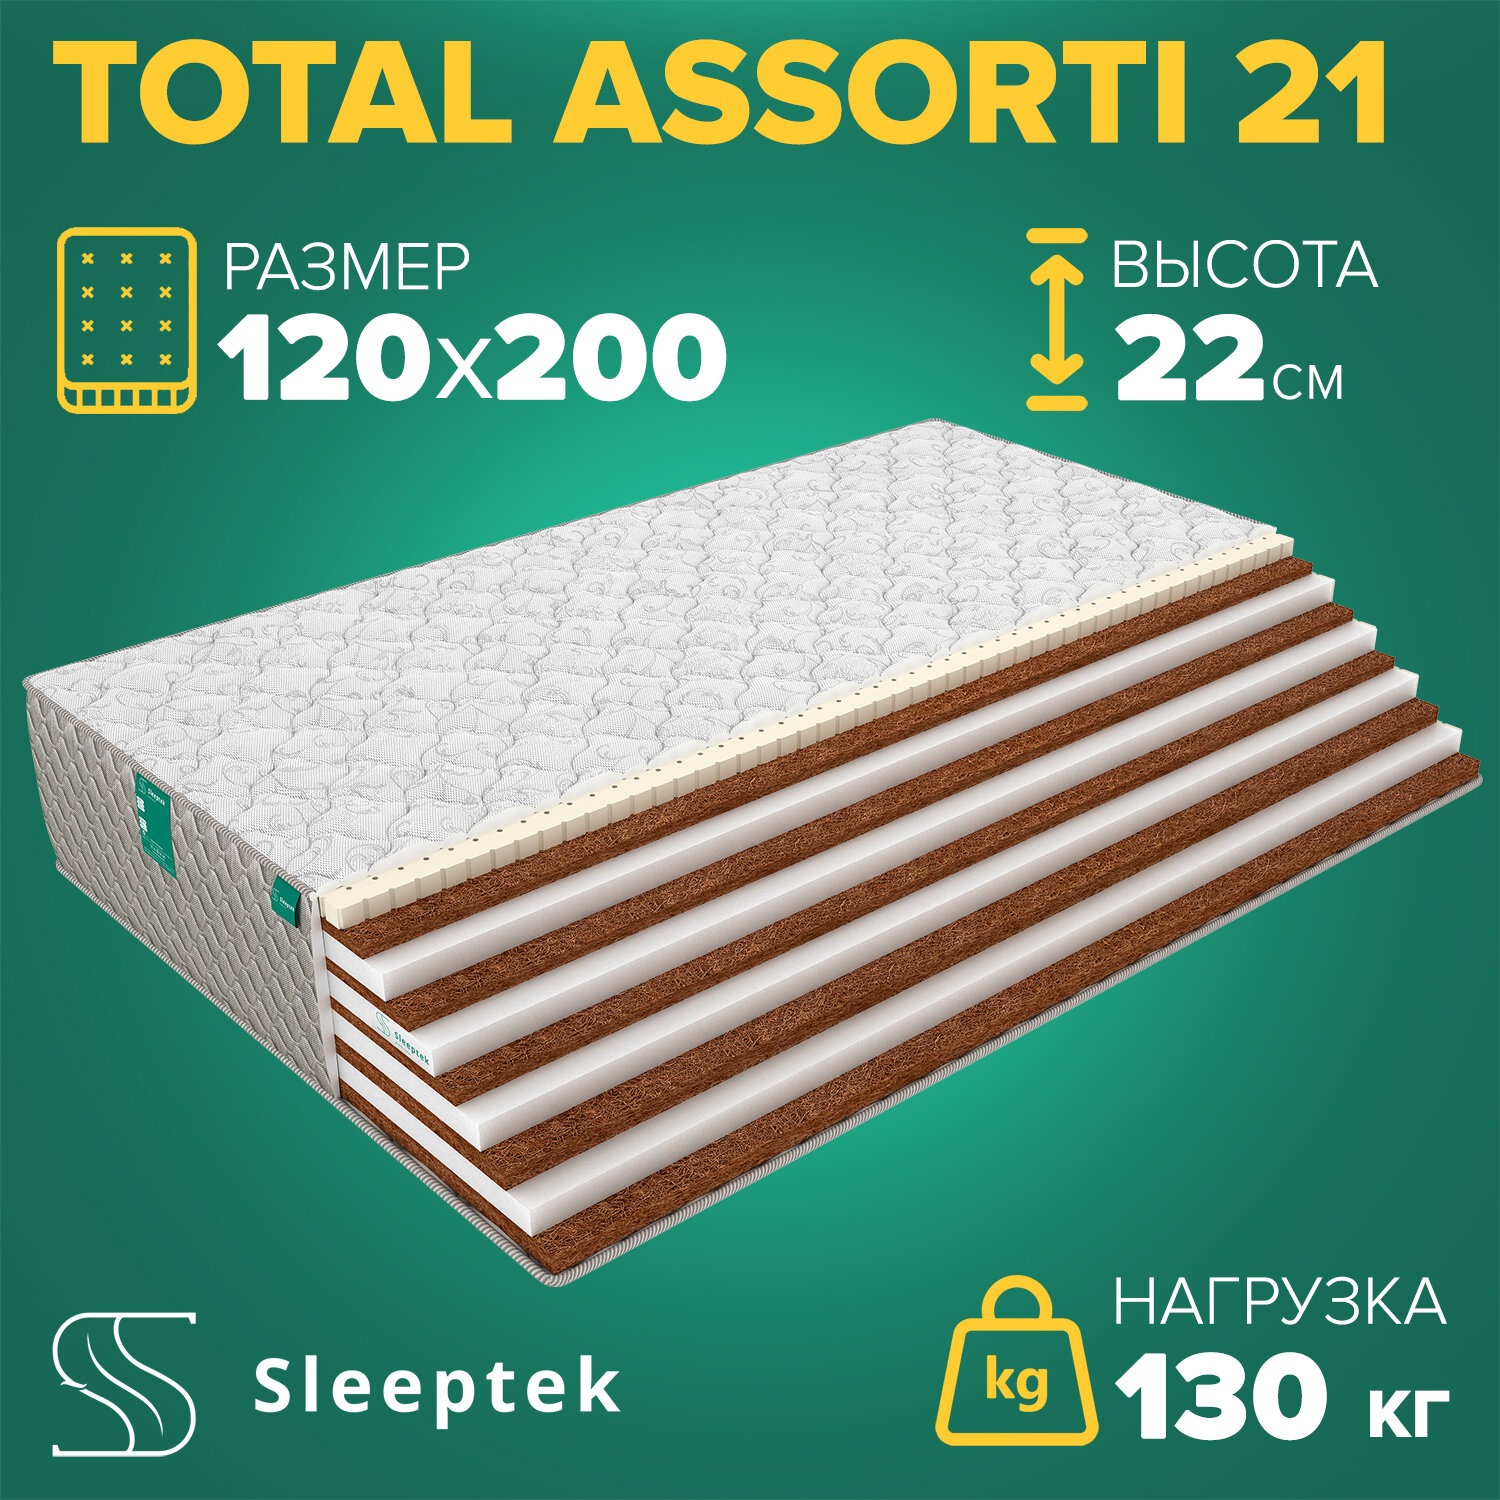 Матрас Sleeptek Total Assotri 21 120х200